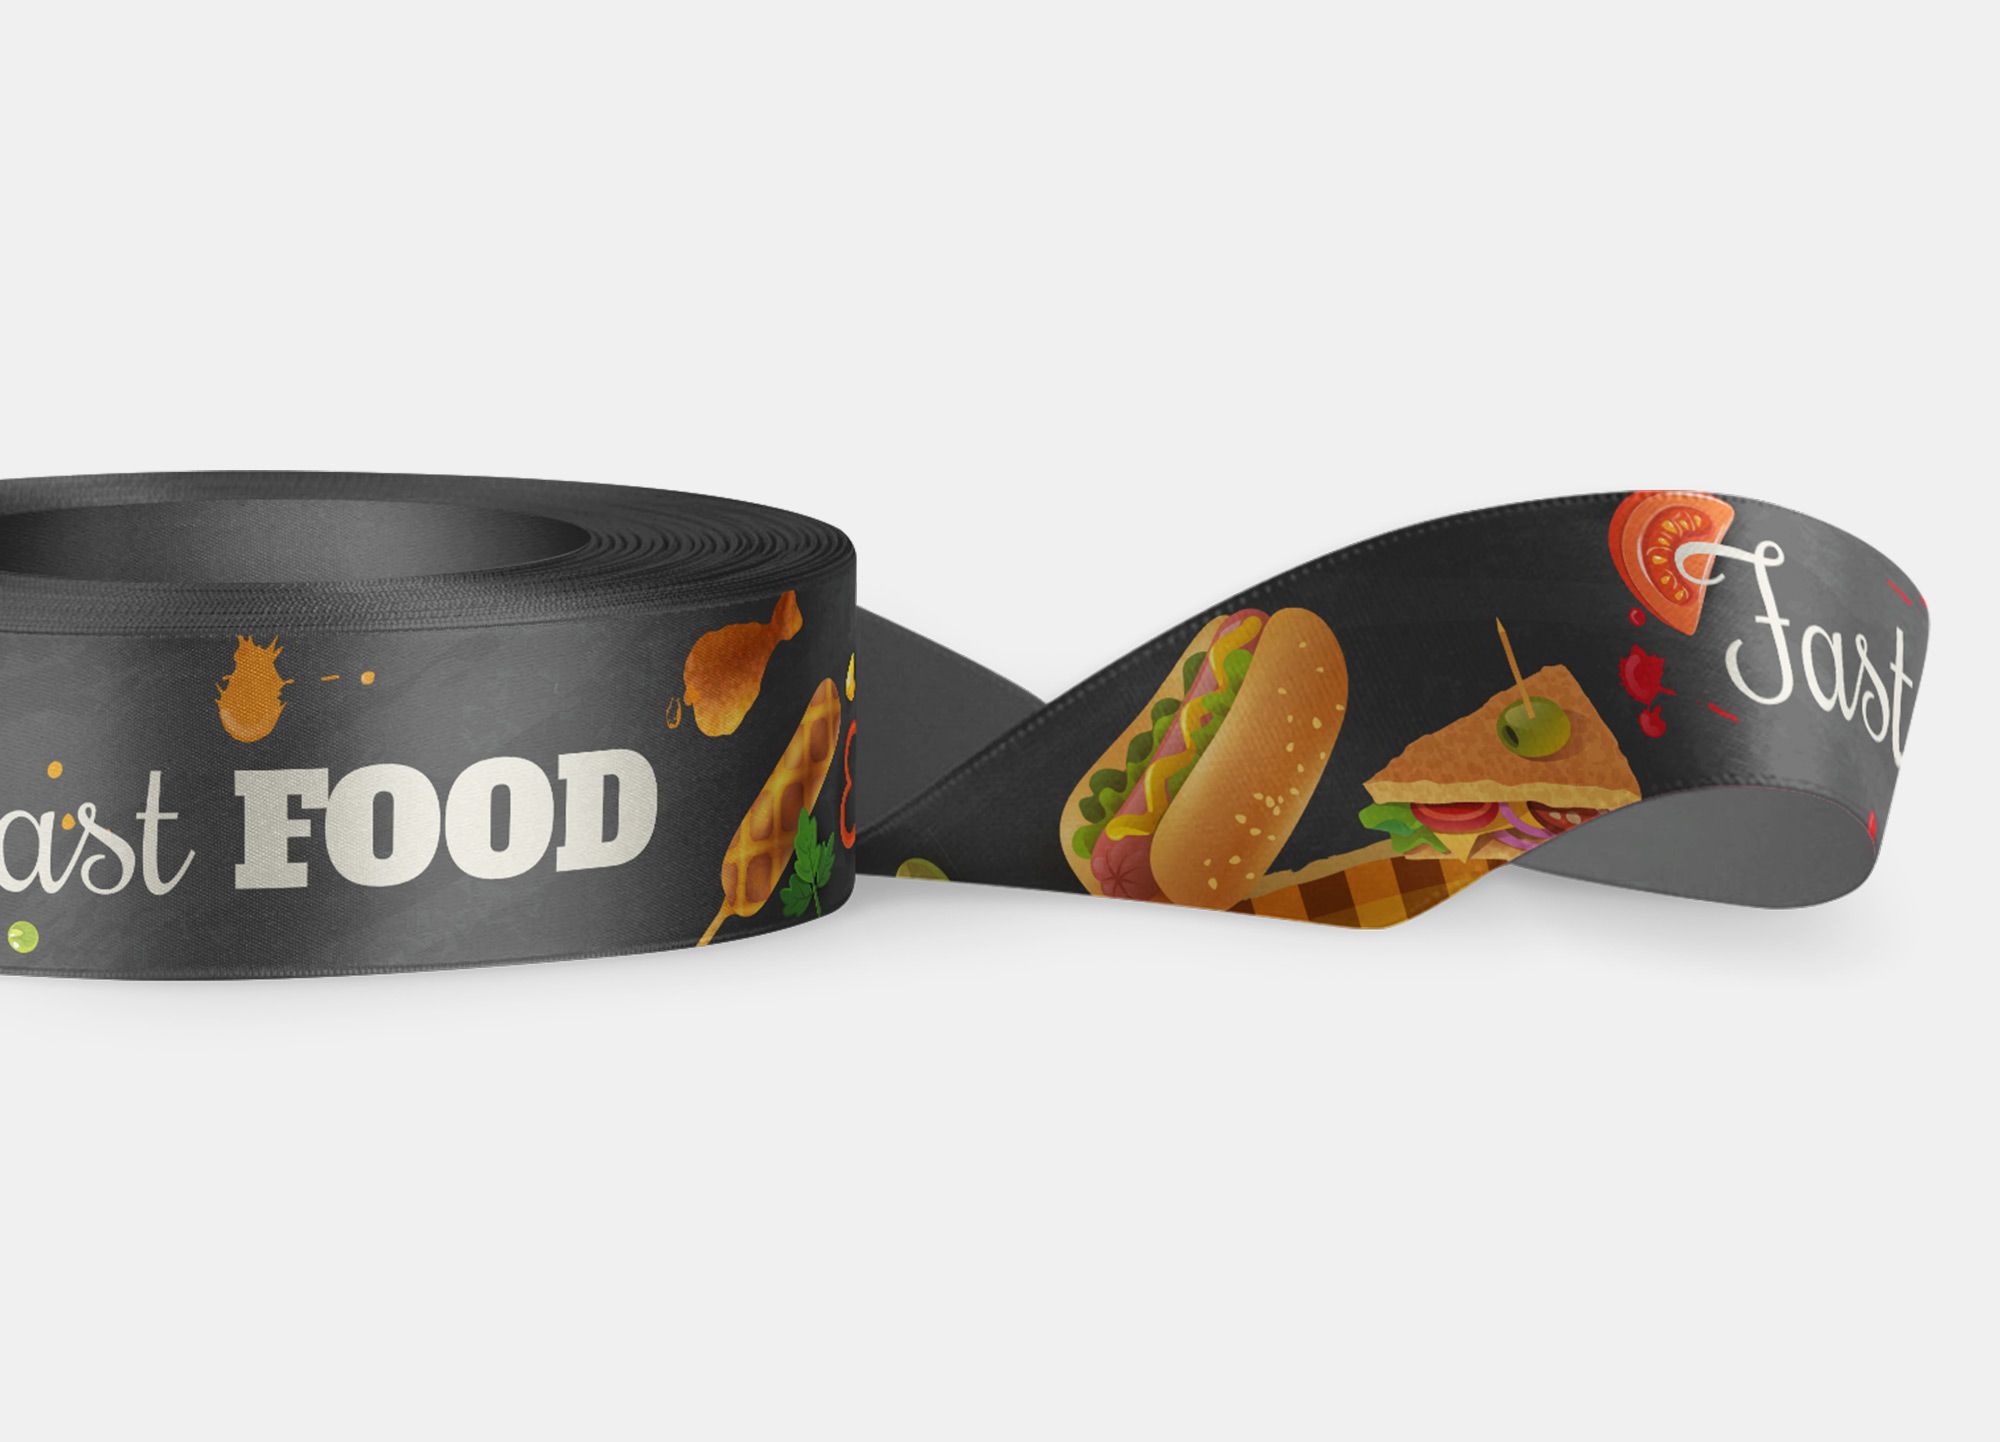 Nastro Fast Food perfetto per essere usato come porta-badge o braccialetto lasciapassare per eventi legati allo street food.